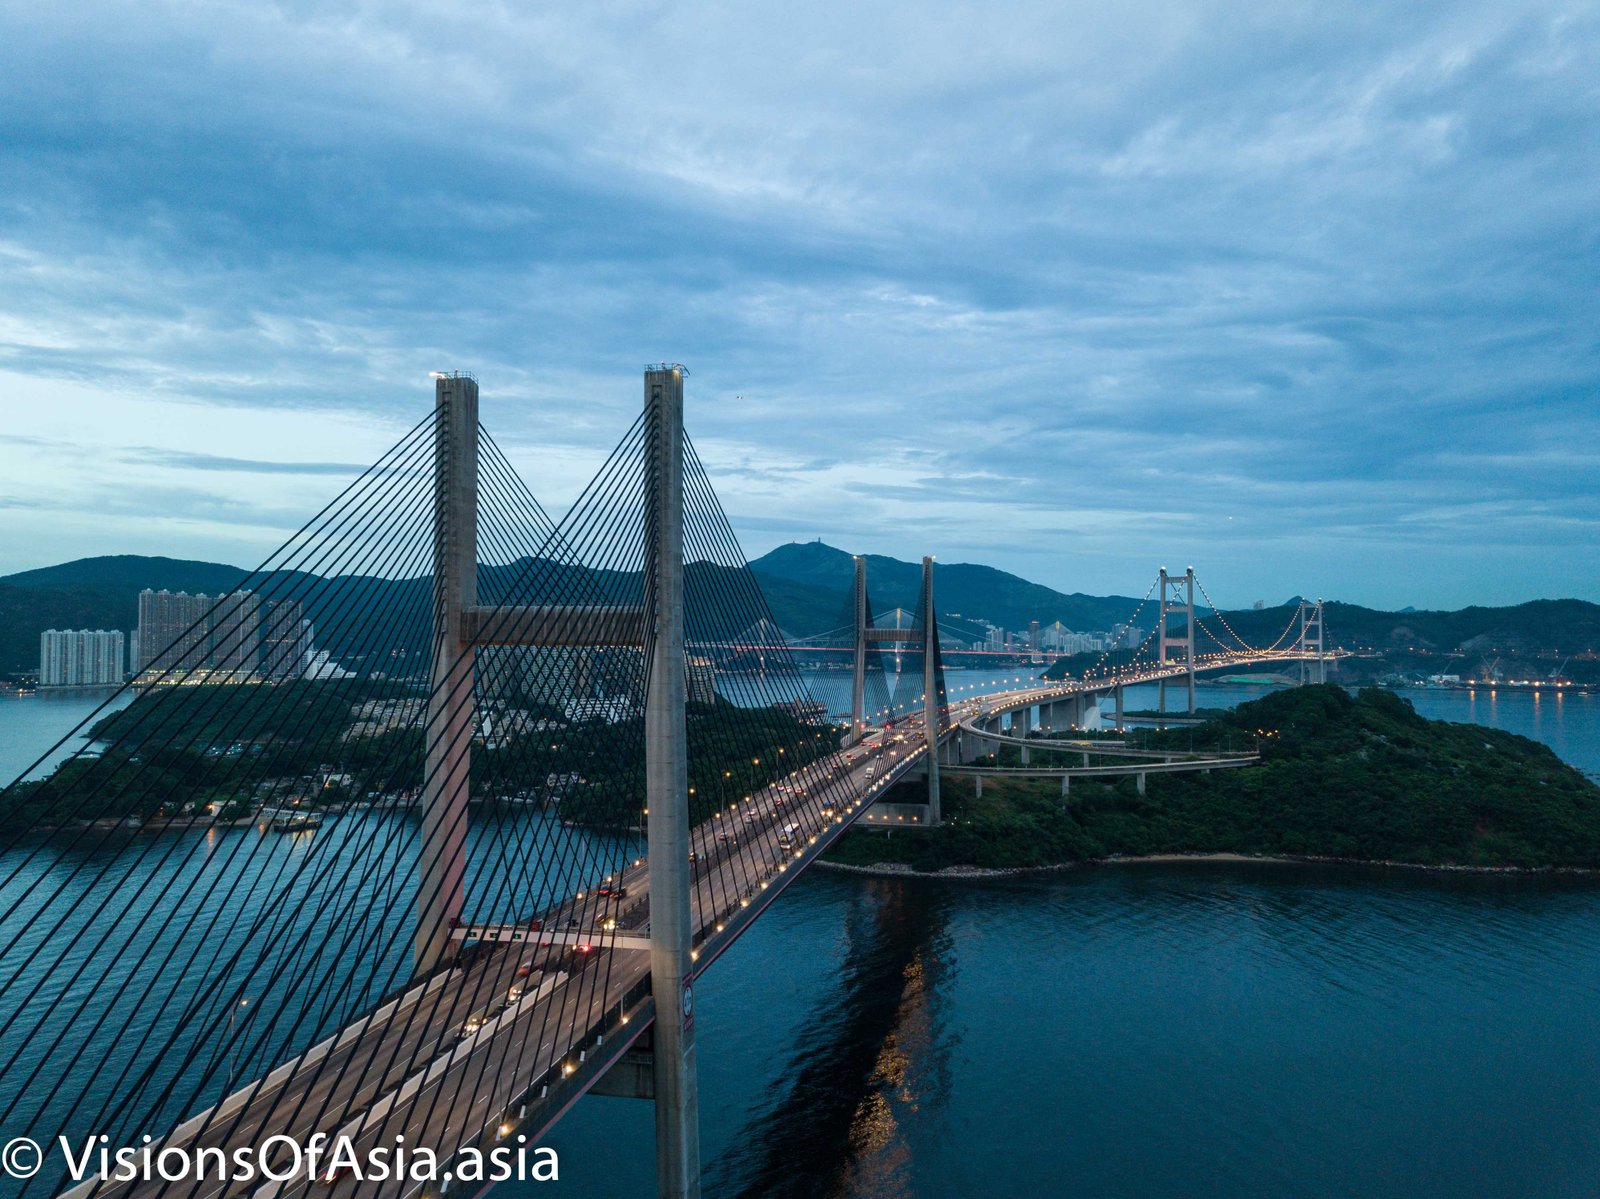 Kap Shui Mun bridge